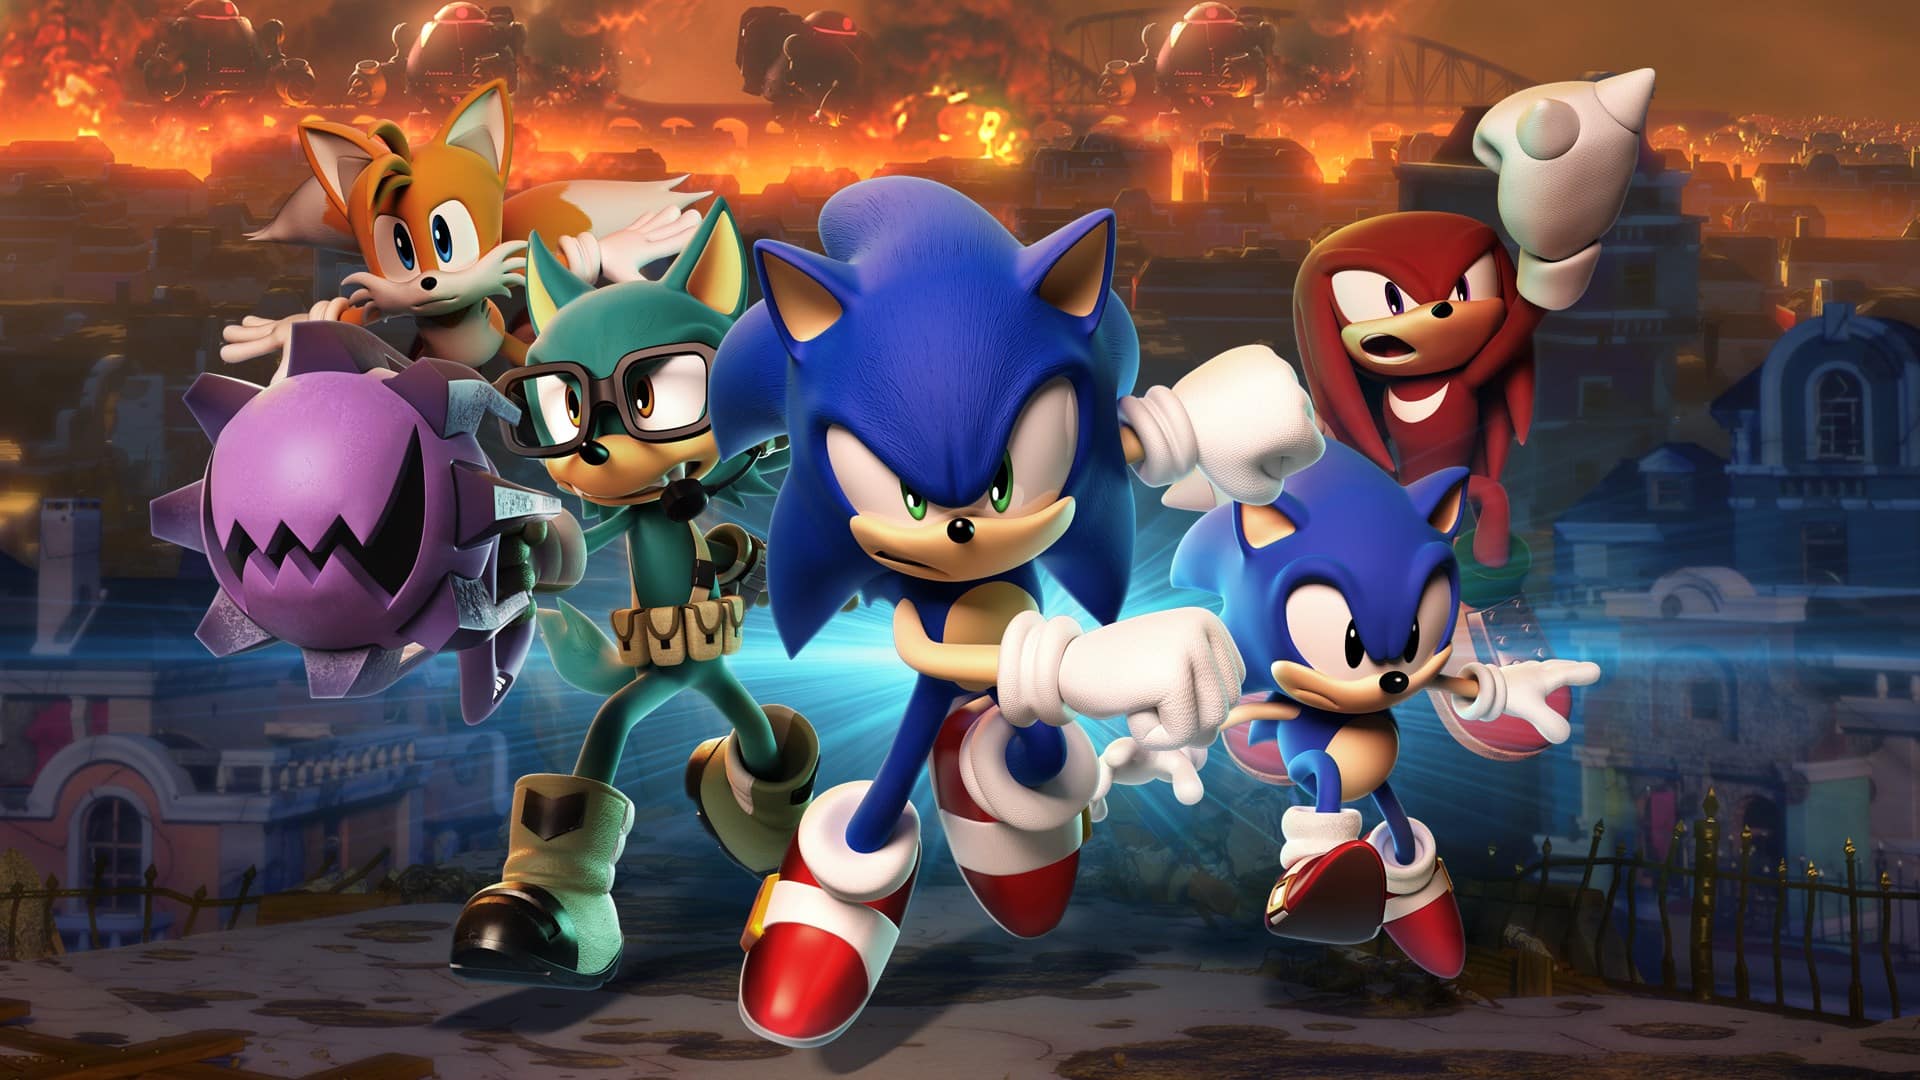  Sonic - Origen, historia y curiosidades sobre el velocista del juego